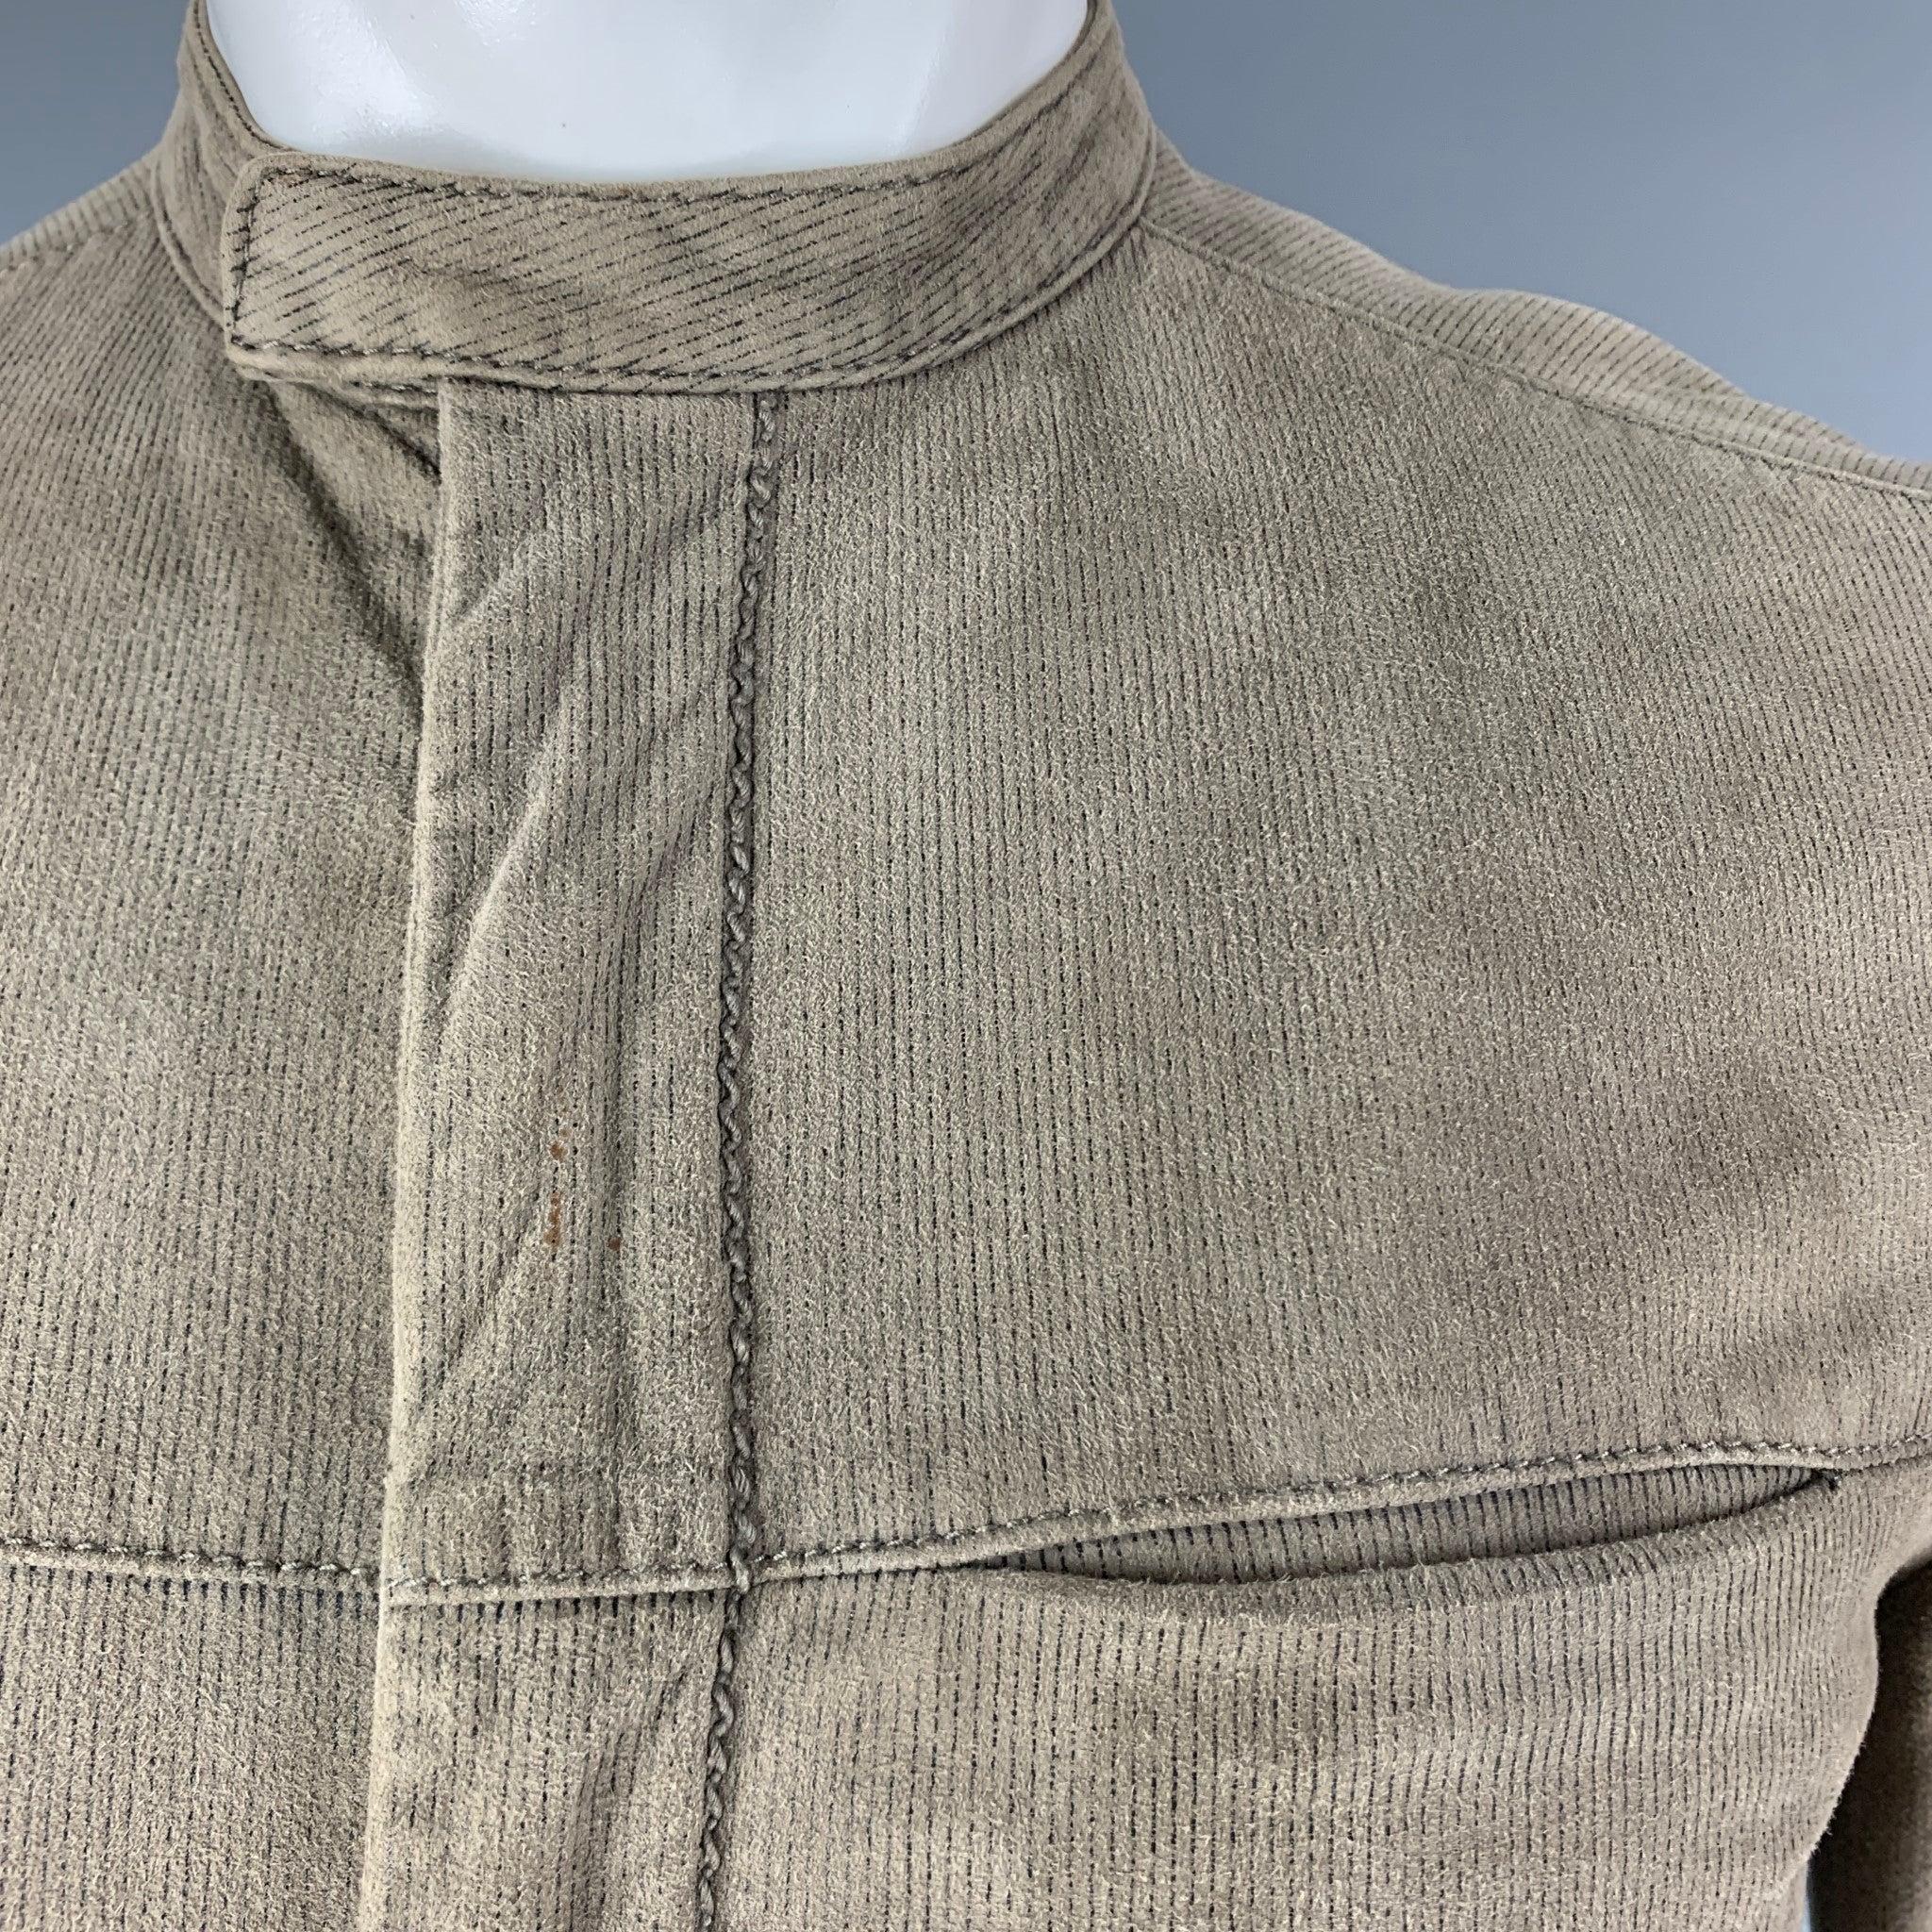 La veste zippée vert olive JOHN VARVATOS est réalisée en 100% daim de chèvre et présente un col mandarin, des rayures et des poches passepoilées. Très bon état d'origine. 

Marqué :   44 

Mesures : 
 
Épaule : 16.5 pouces Poitrine : 38 pouces